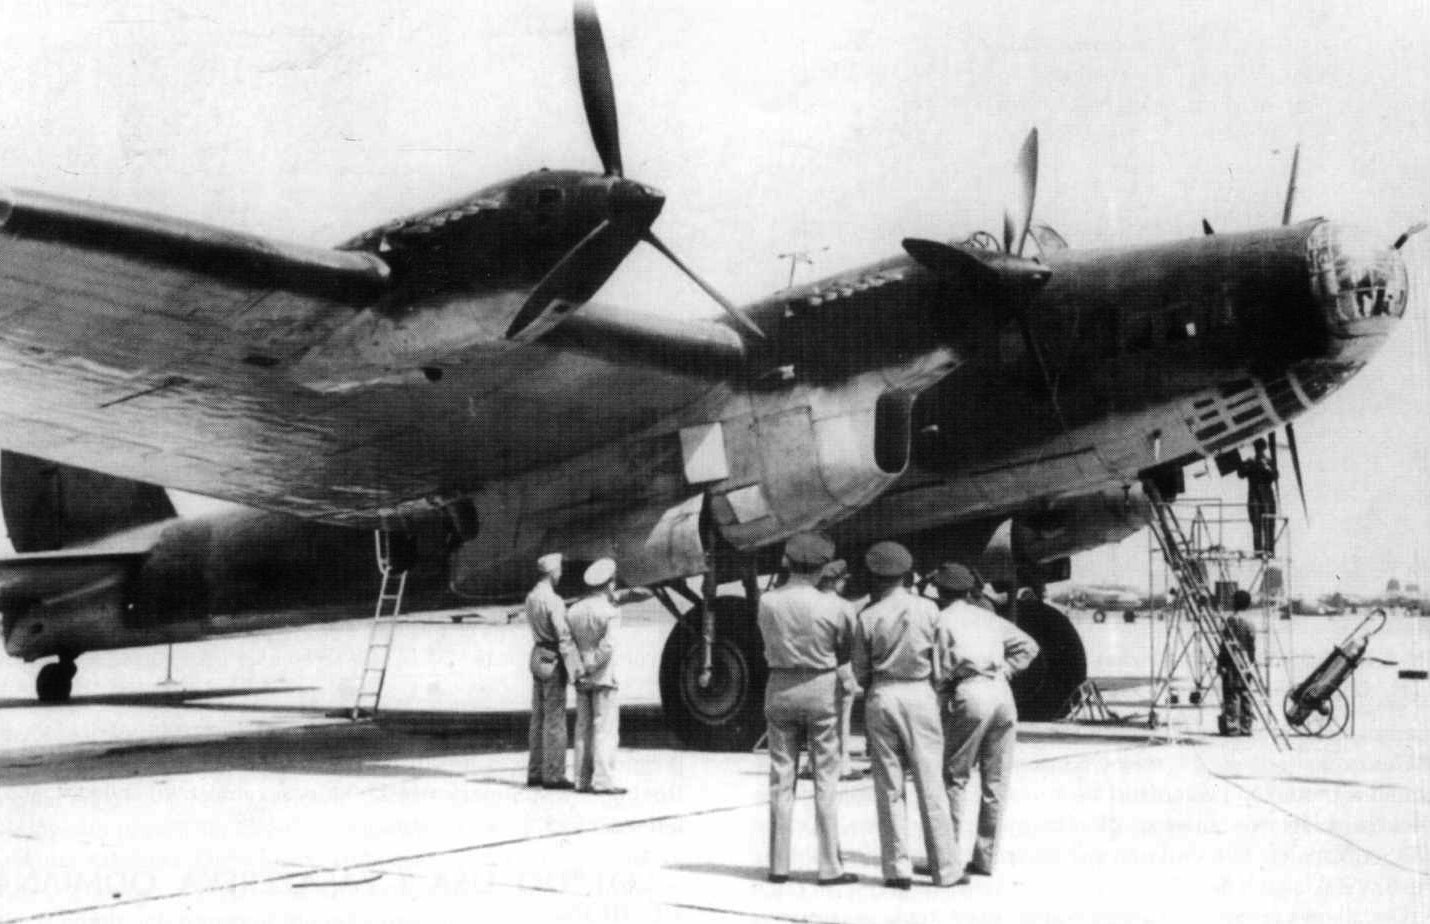 29 мая 1942 года Пе-8 доставил в Вашингтон для переговоров делегацию во главе с наркомом иностранных дел В.М. Молотовым.